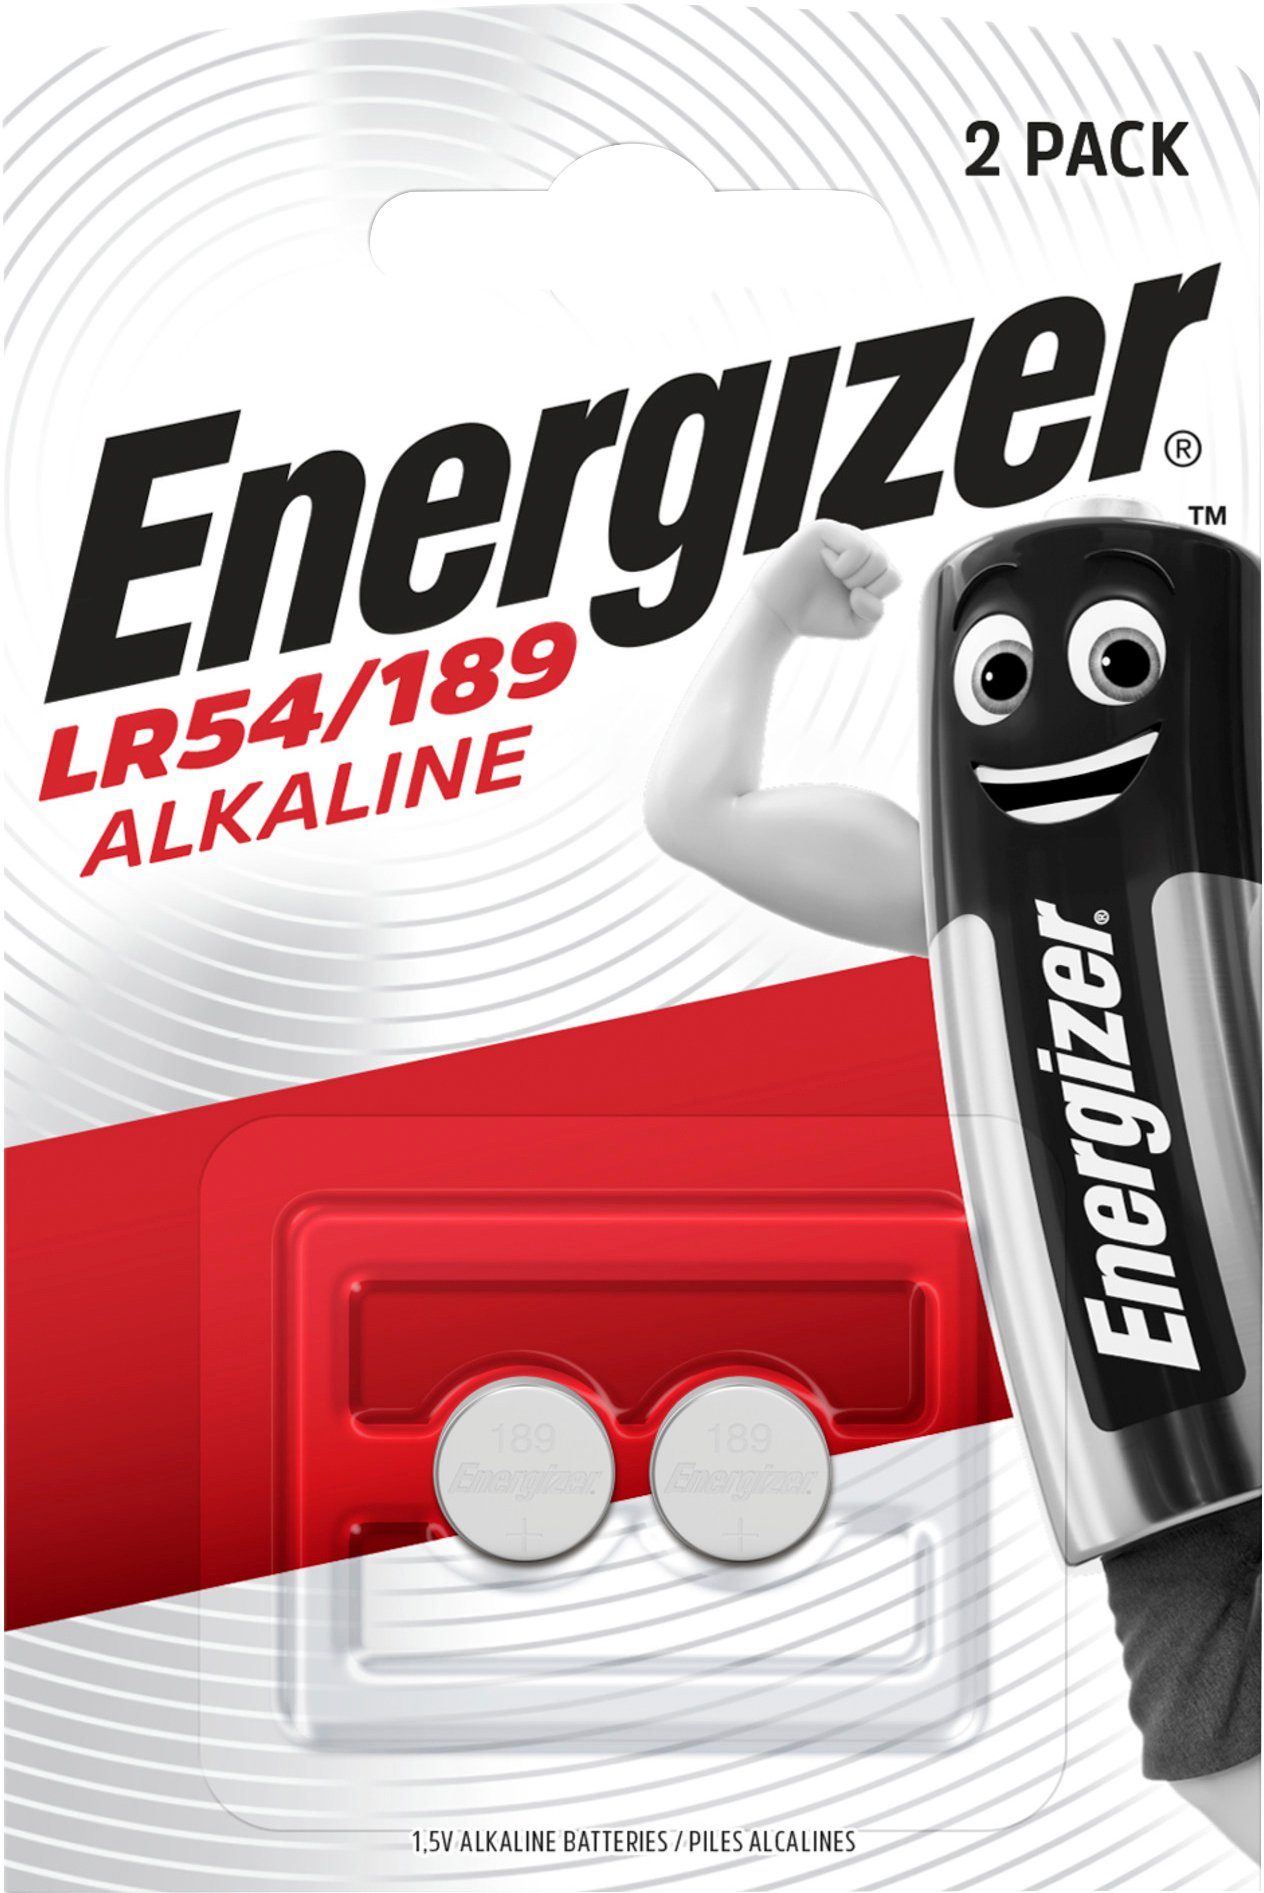 Batterie, (1,5 Mangan 2er V, Pack 2 St) LR54 189 Alkali / Energizer